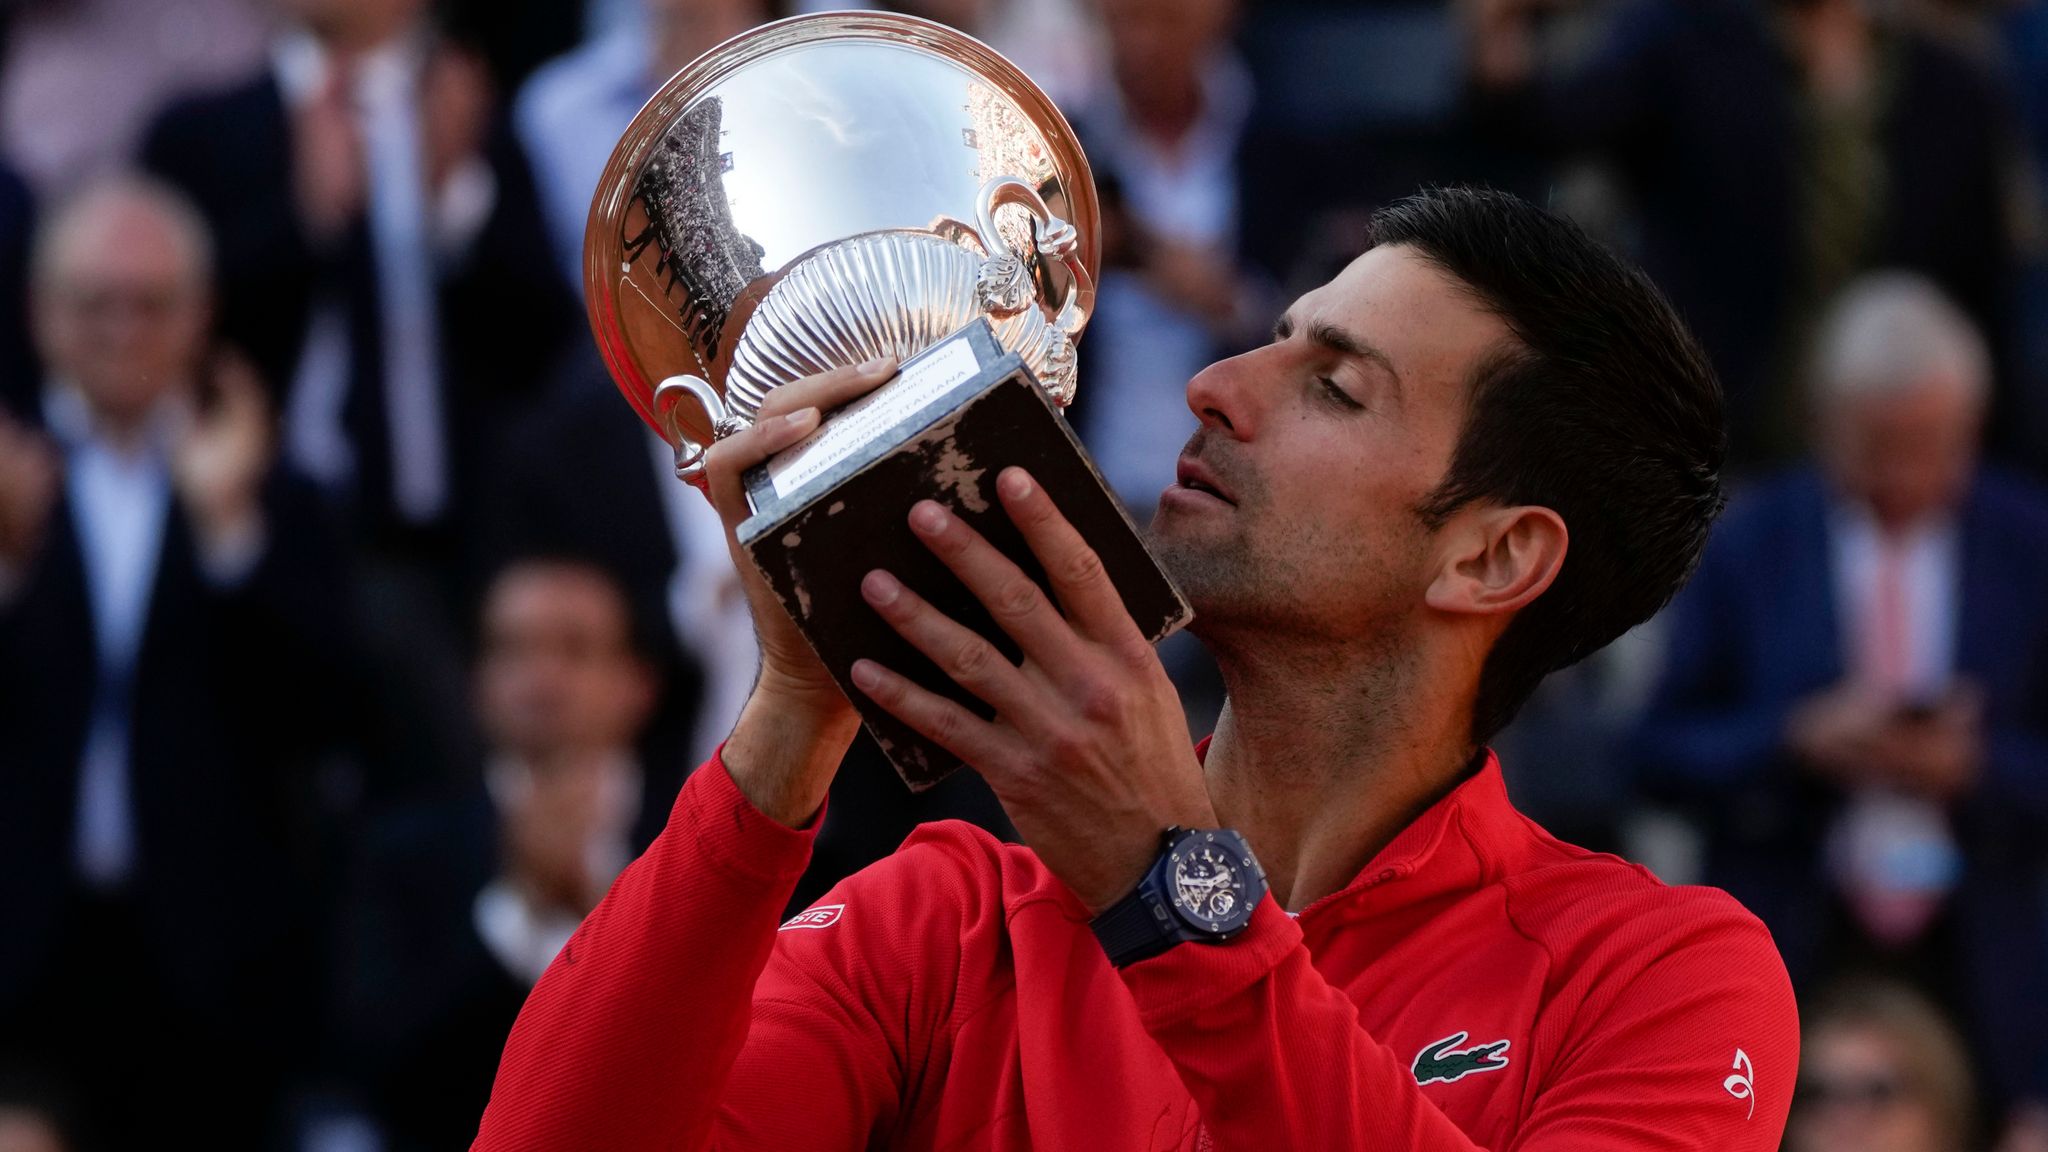 Italian Open: Novak Djokovic beats Stefanos Tsitsipas in Rome to